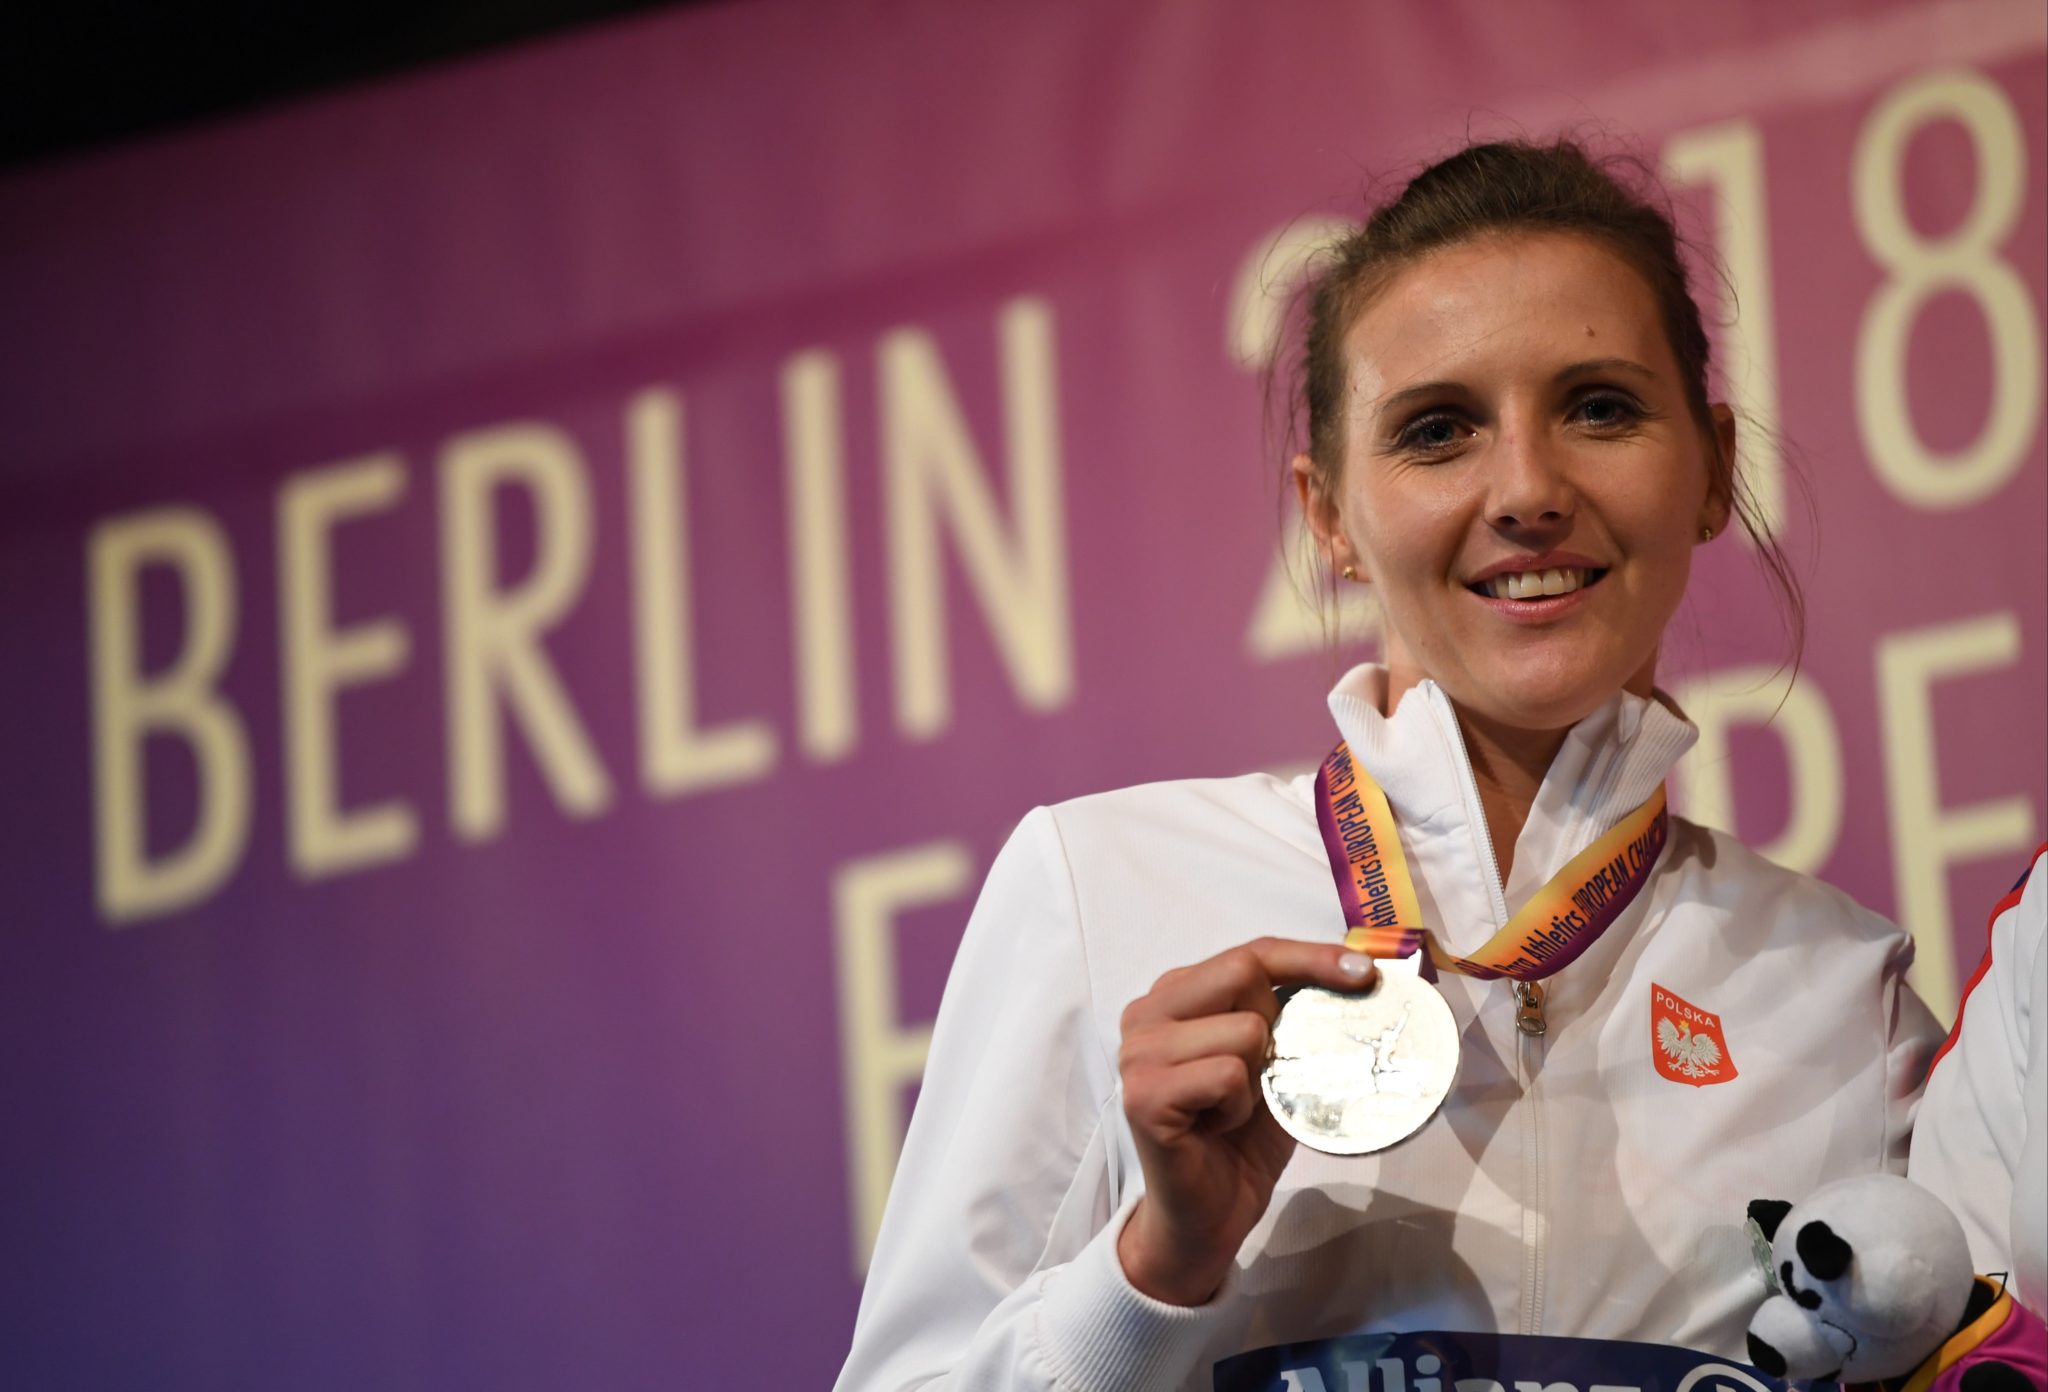 Katarzyna Piekart podczas ceremonii dekoracji medalami uczestników konkursu rzutu oszczepem. Wywalczyła srebrny medal.